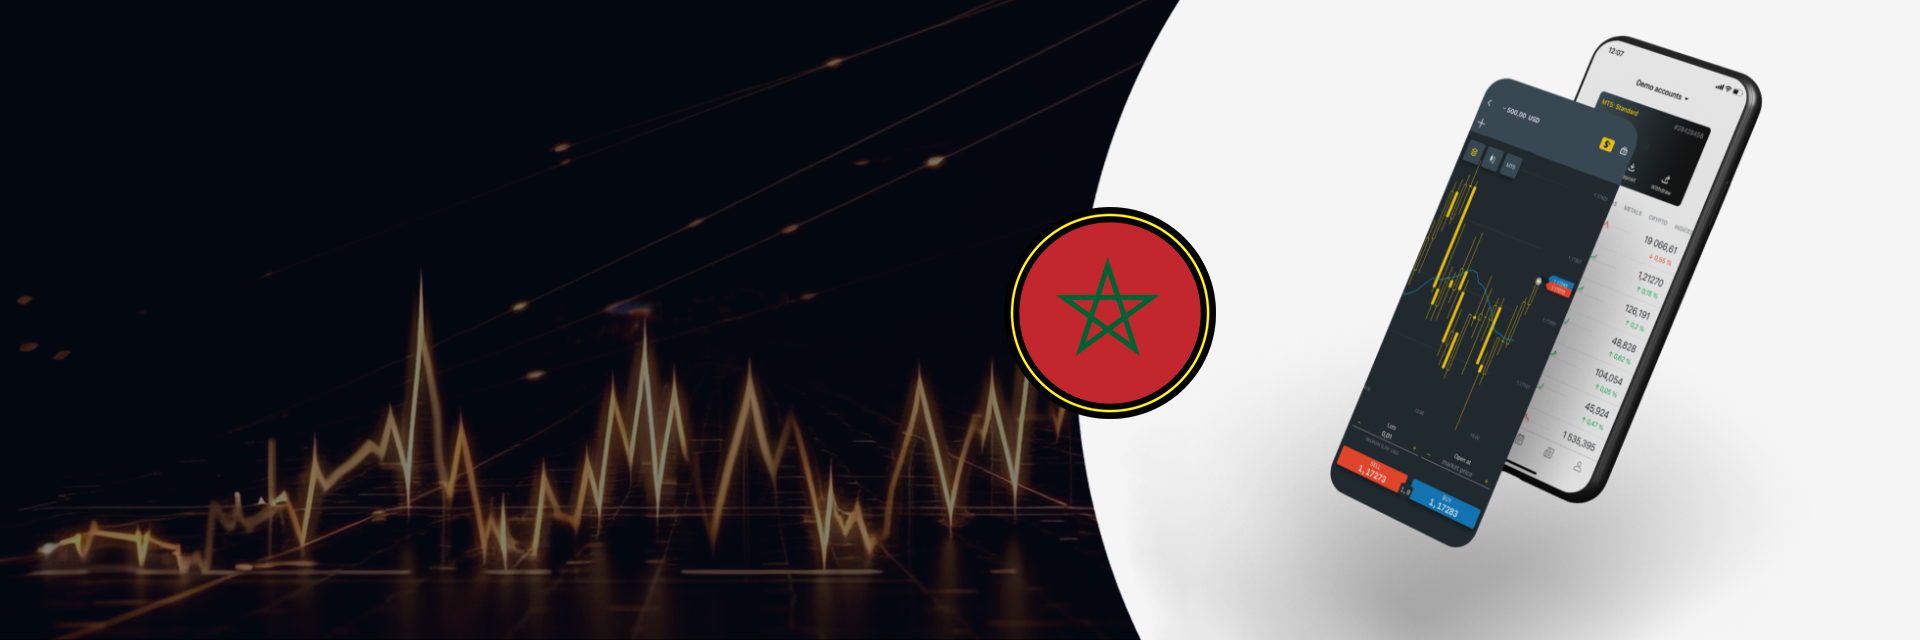 Exness في المغرب: الفوركس و التداول عبر الإنترنت